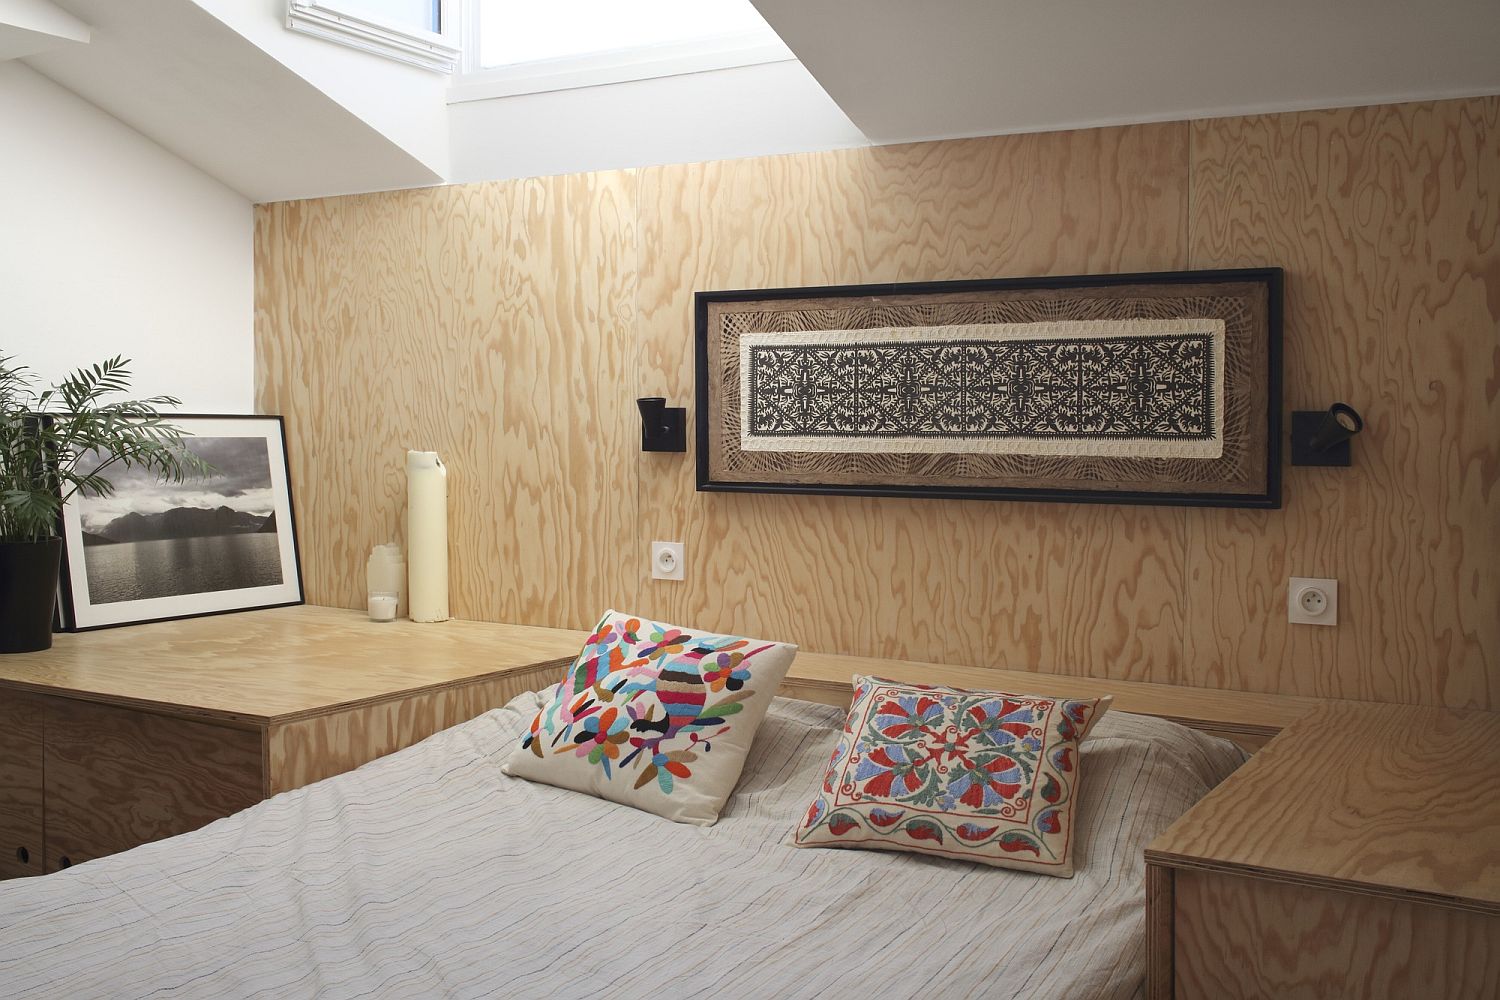 Căn hộ nhỏ làm từ gỗ cực xinh, biến nhà ở thành không gian trang trí trong từng góc nhỏ - Ảnh 12.